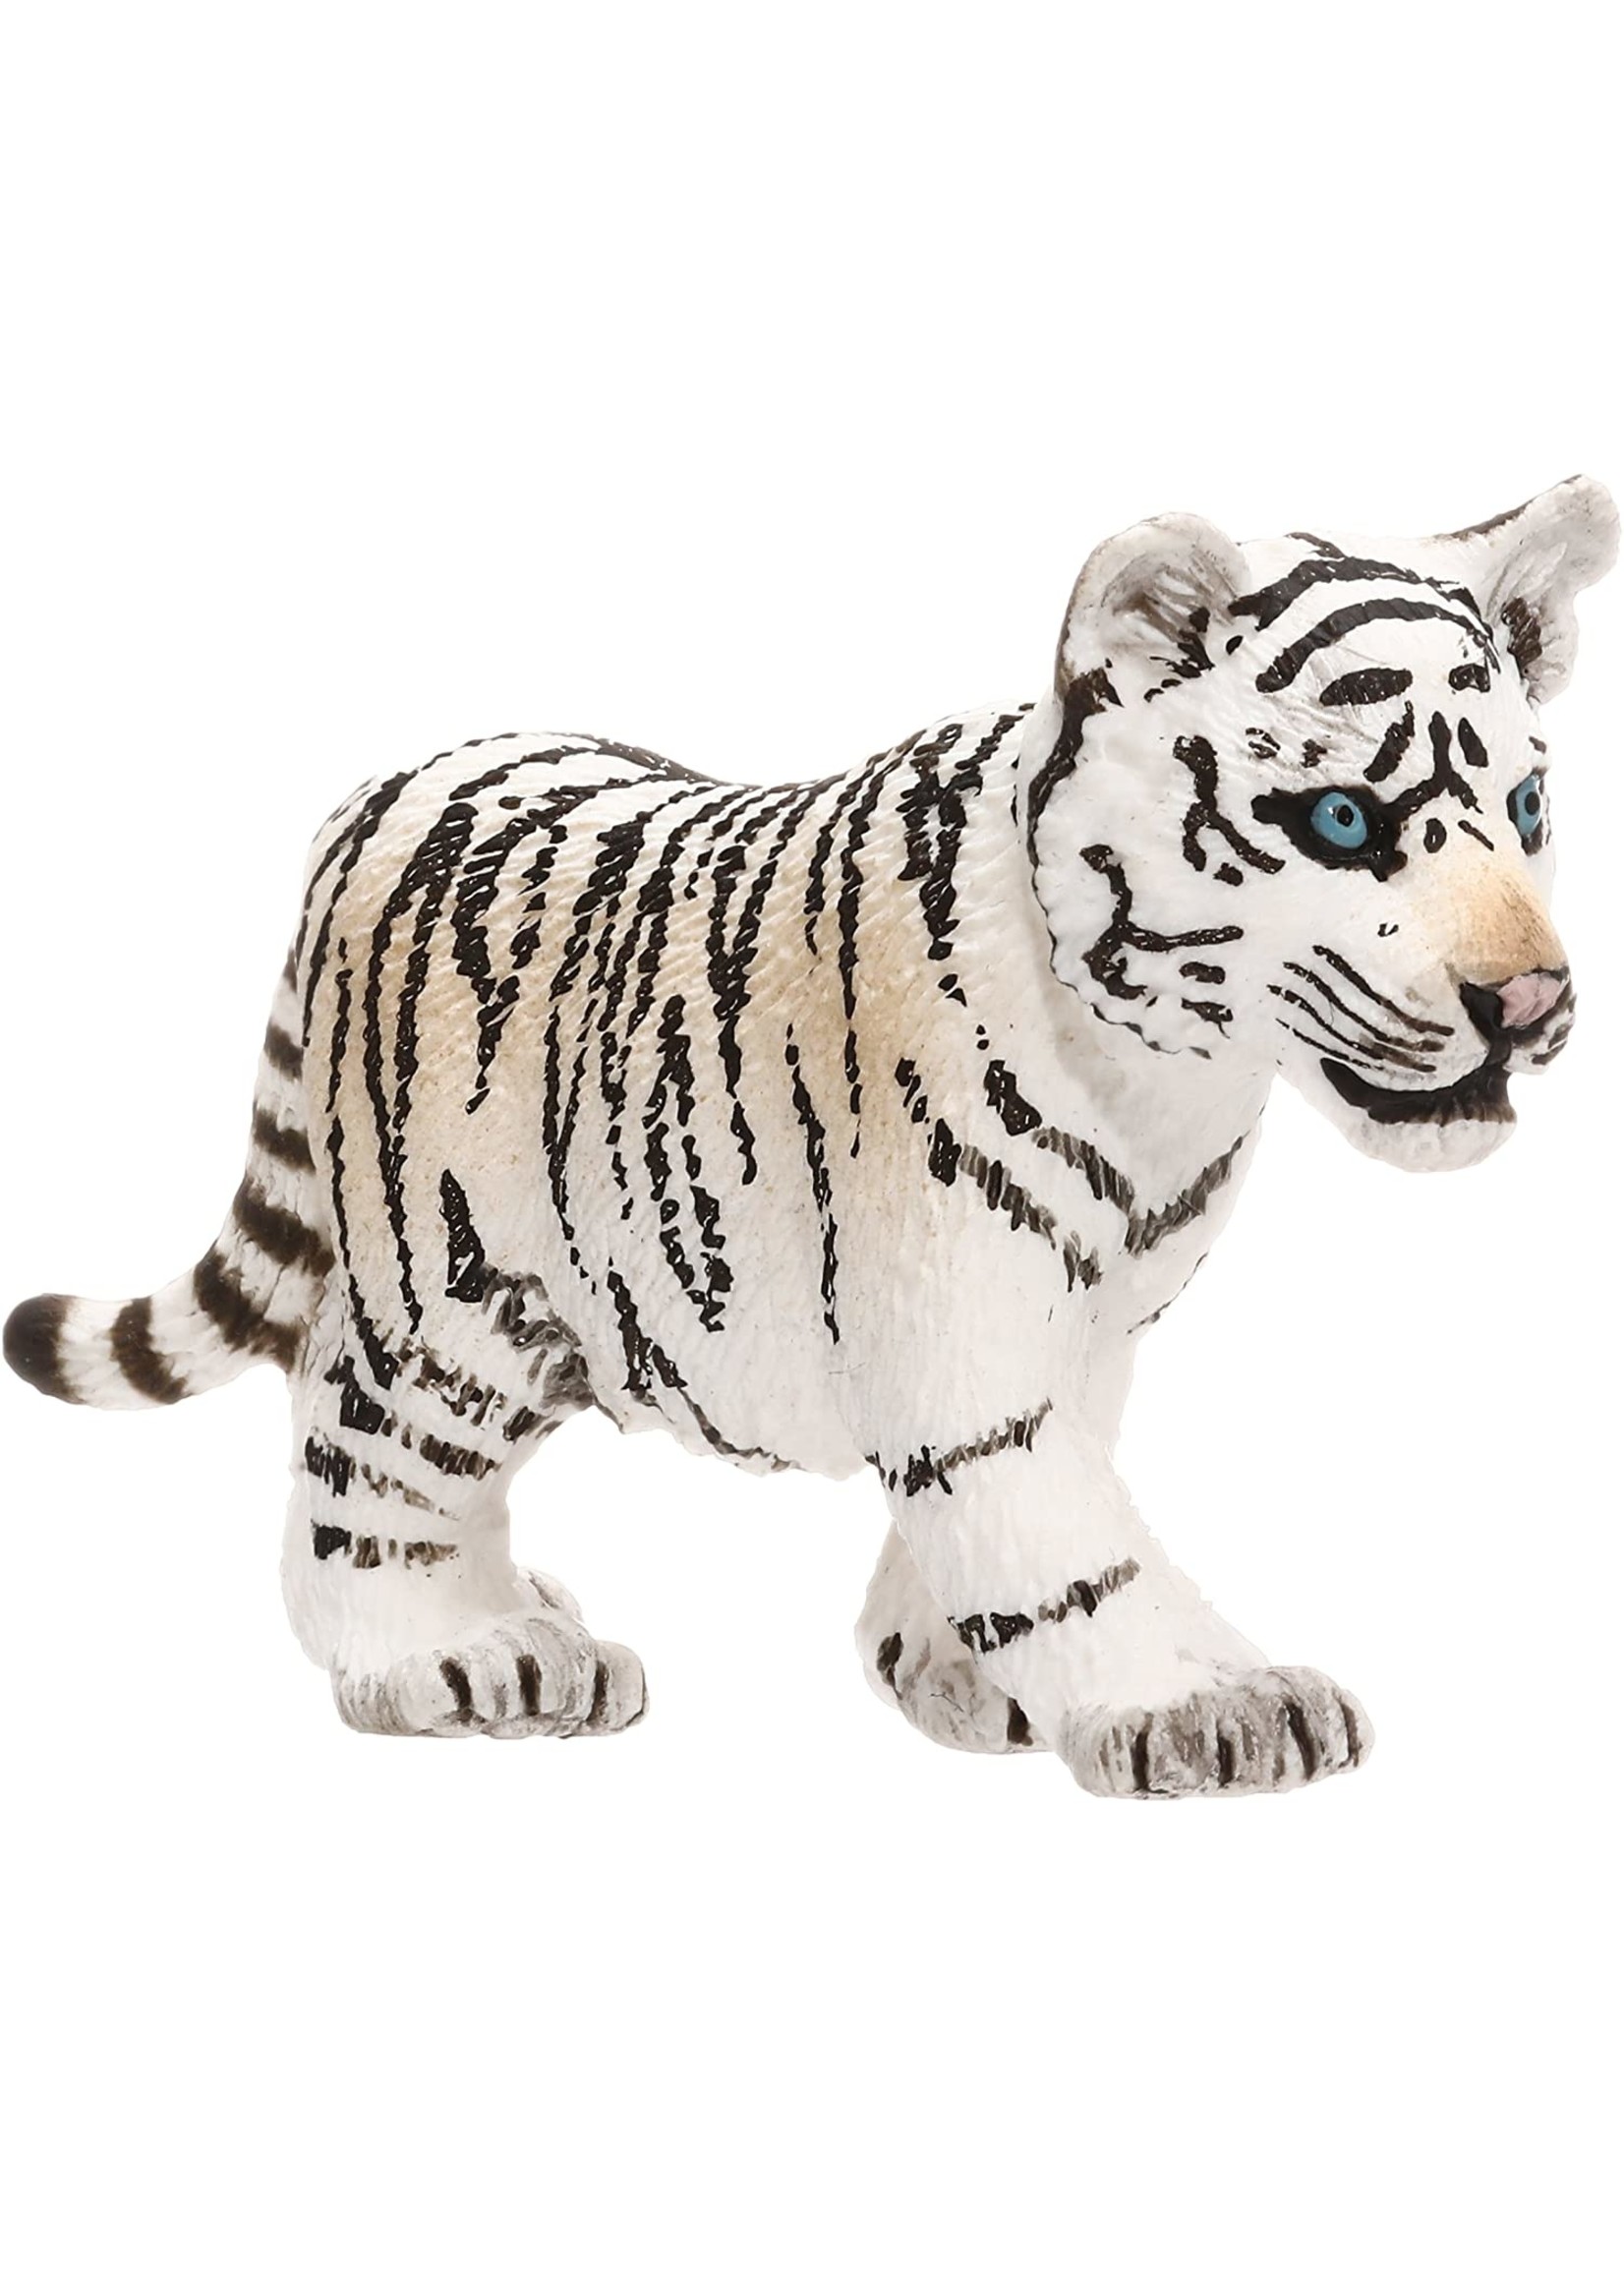 Schleich 14732 - Tiger Cub, White